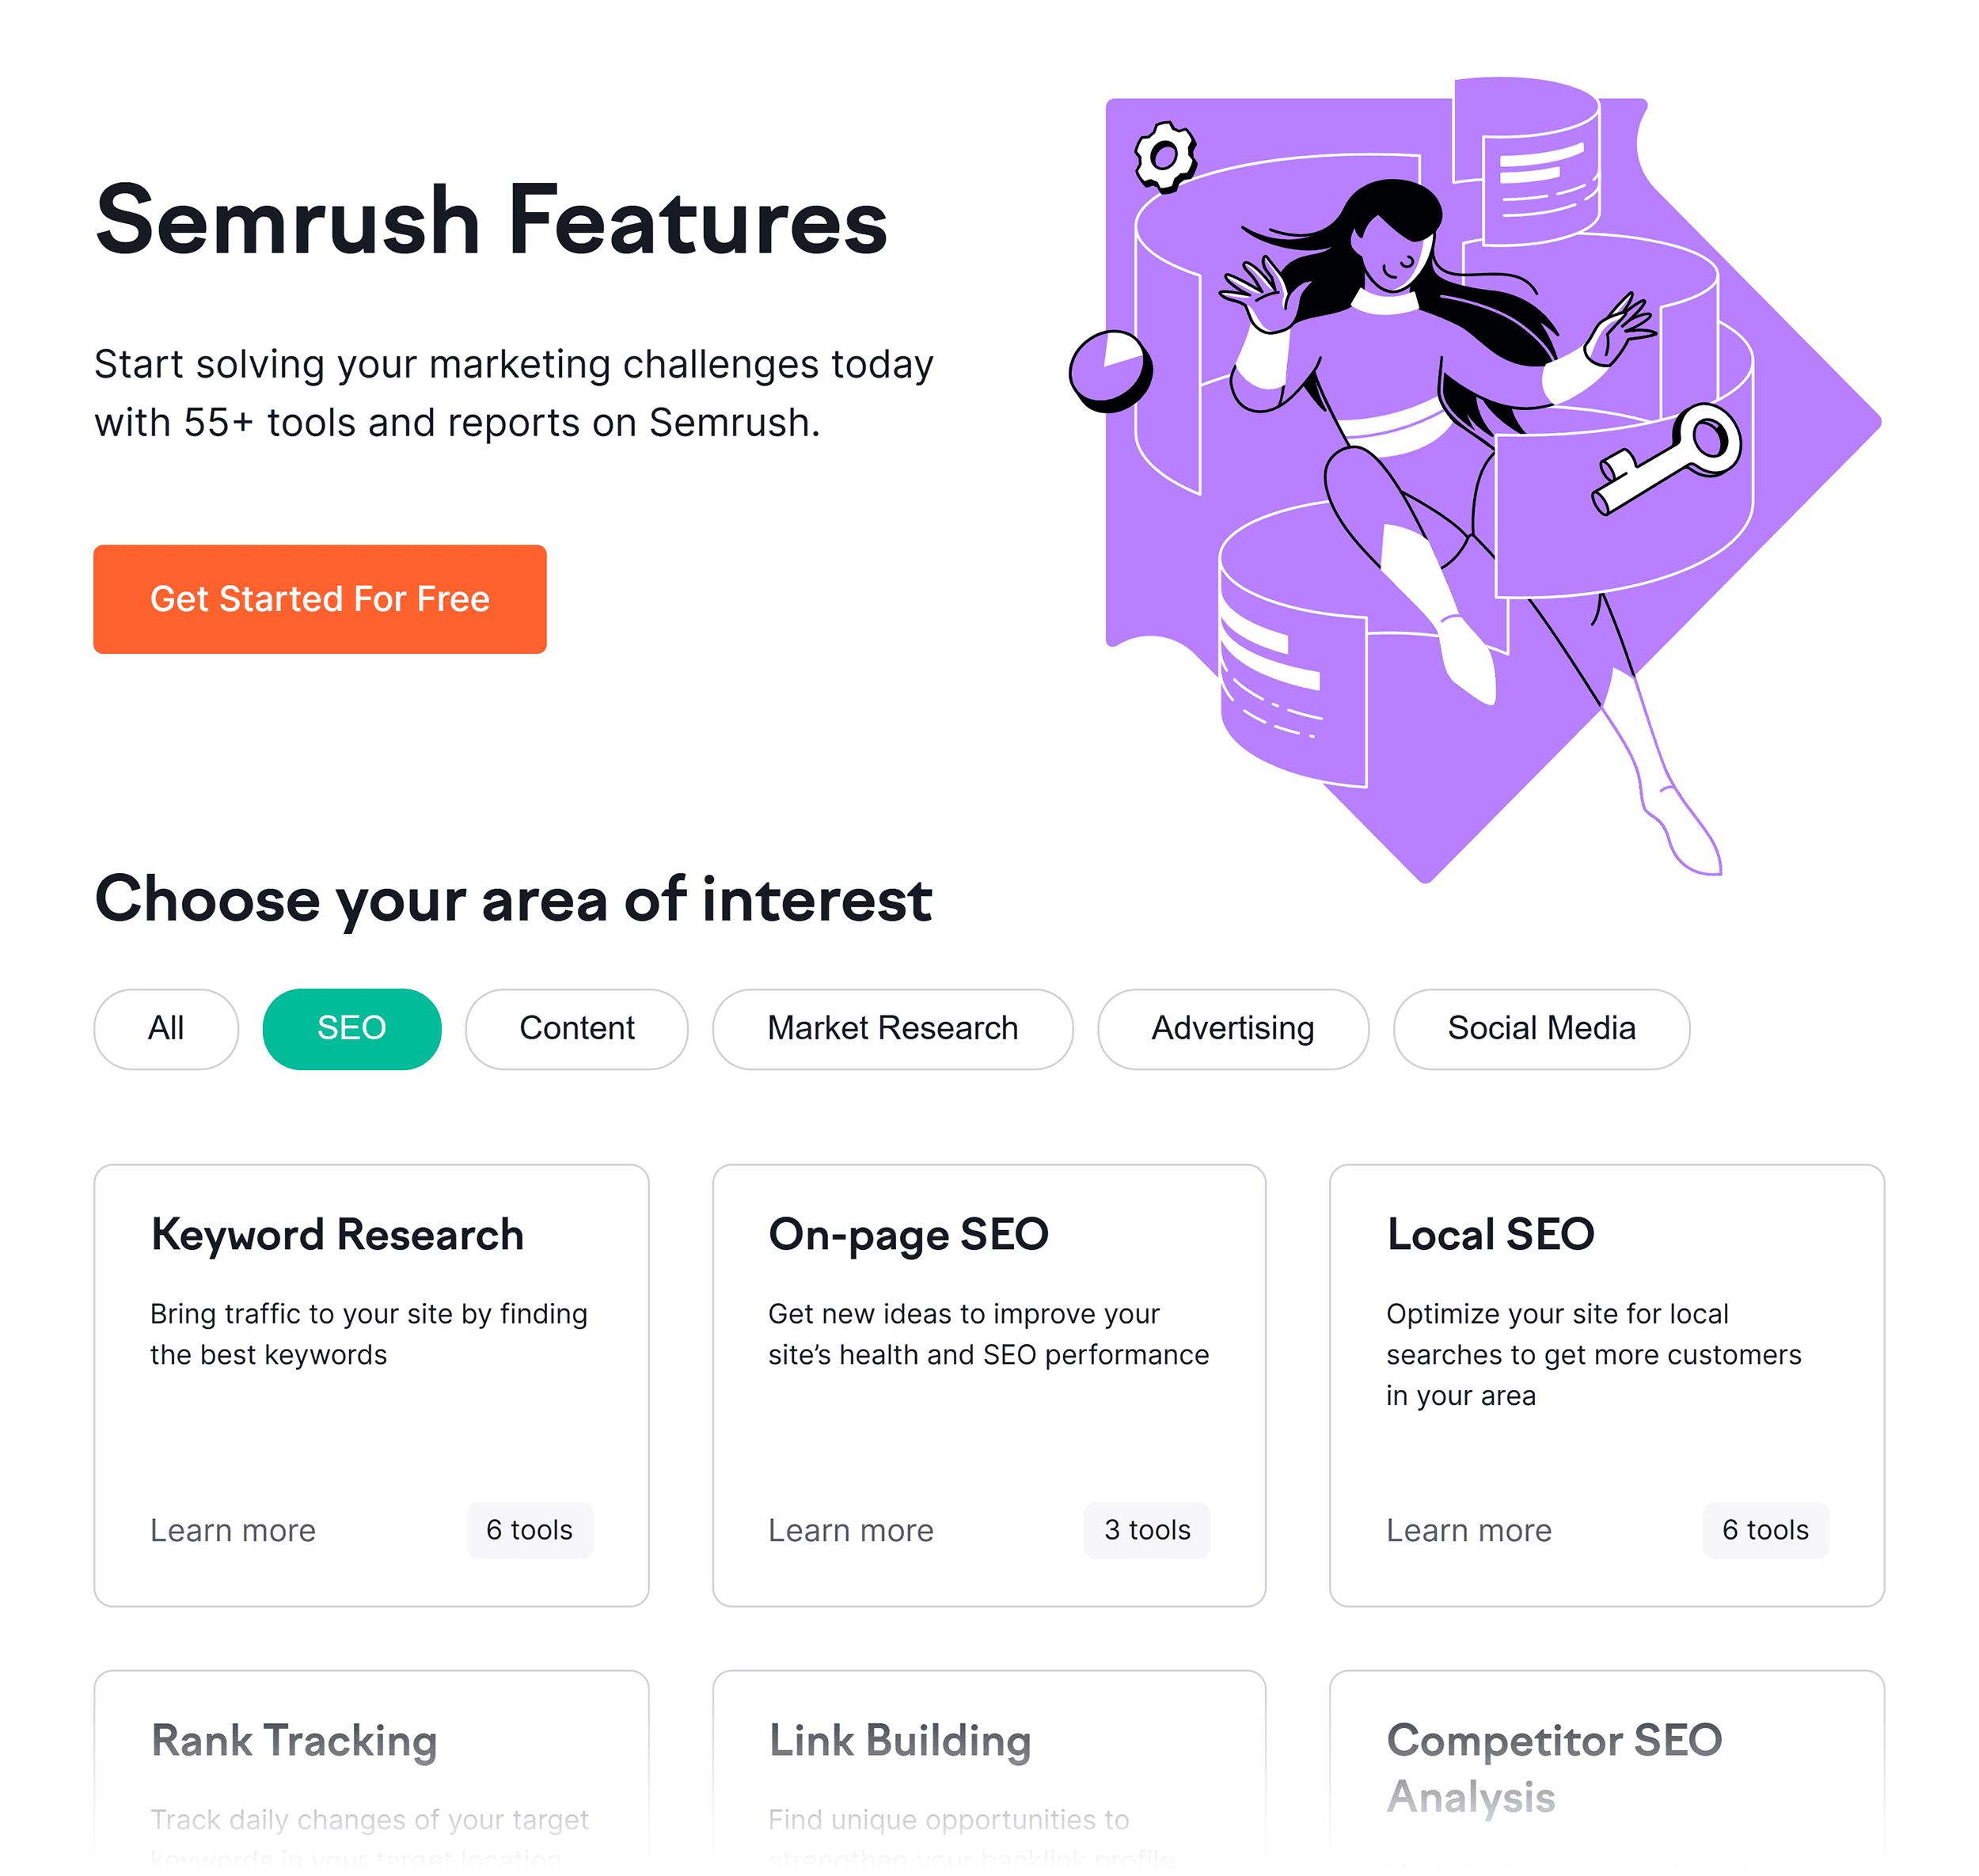 Semrush – Features